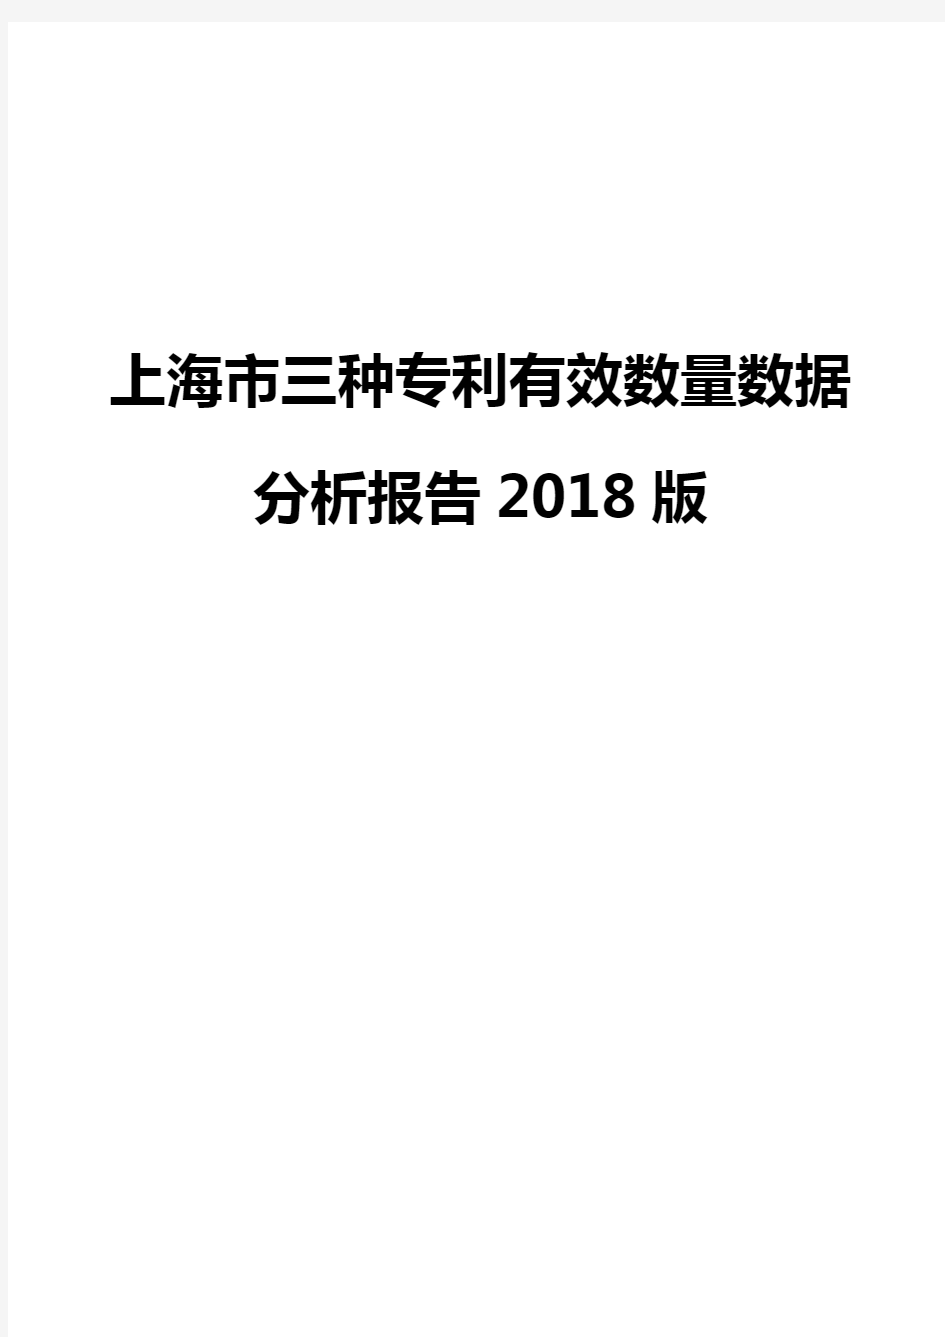 上海市三种专利有效数量数据分析报告2018版